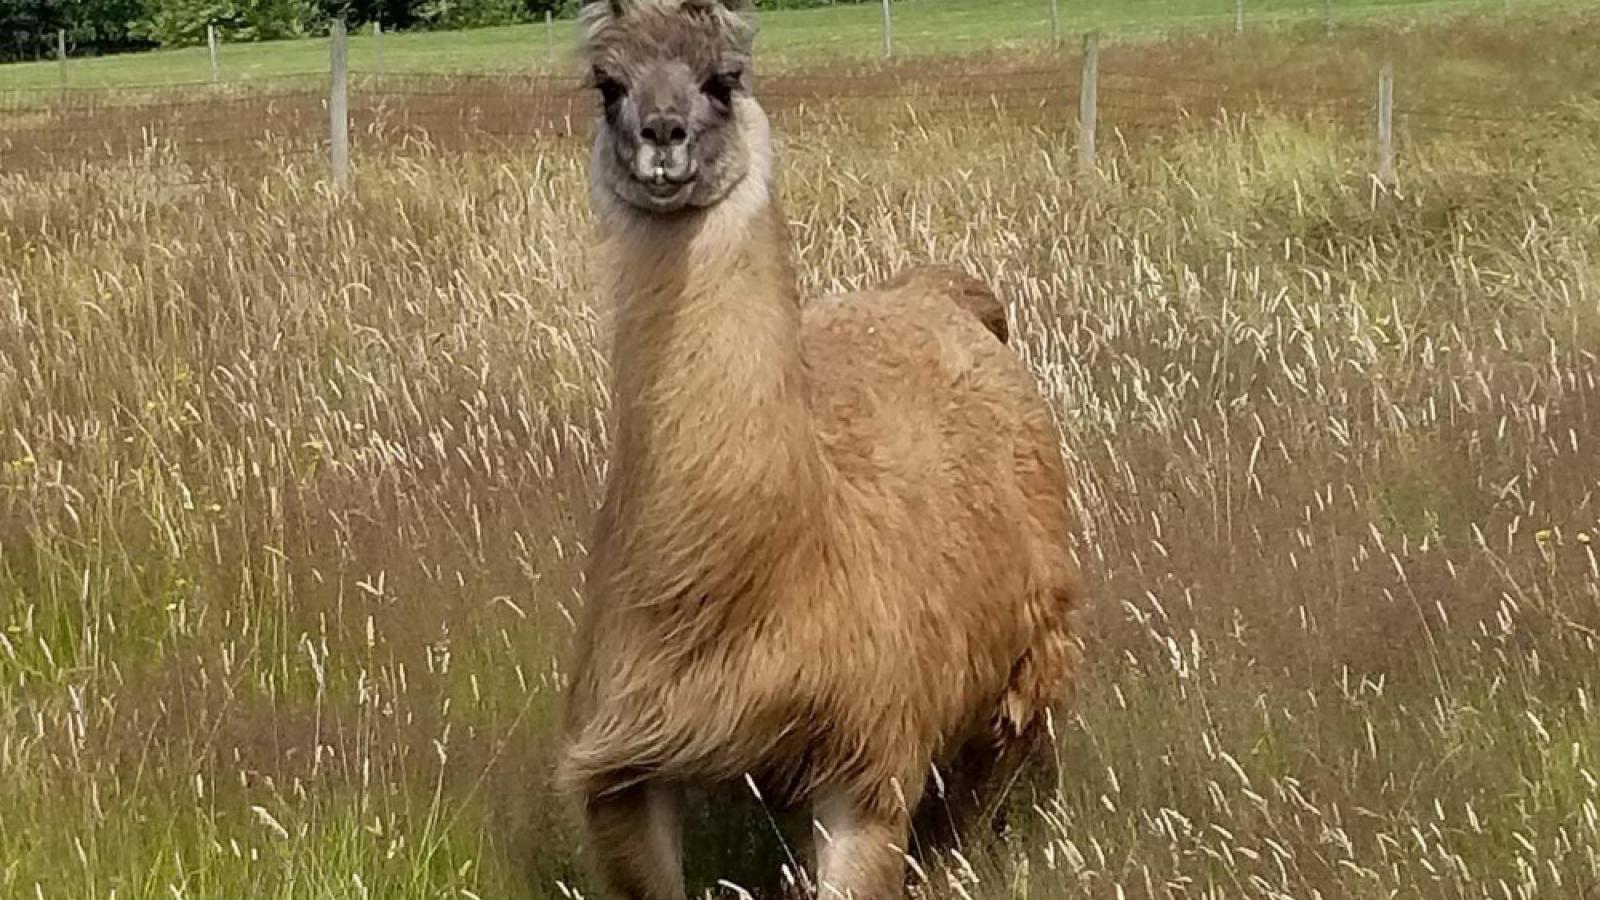 Cormac the llama